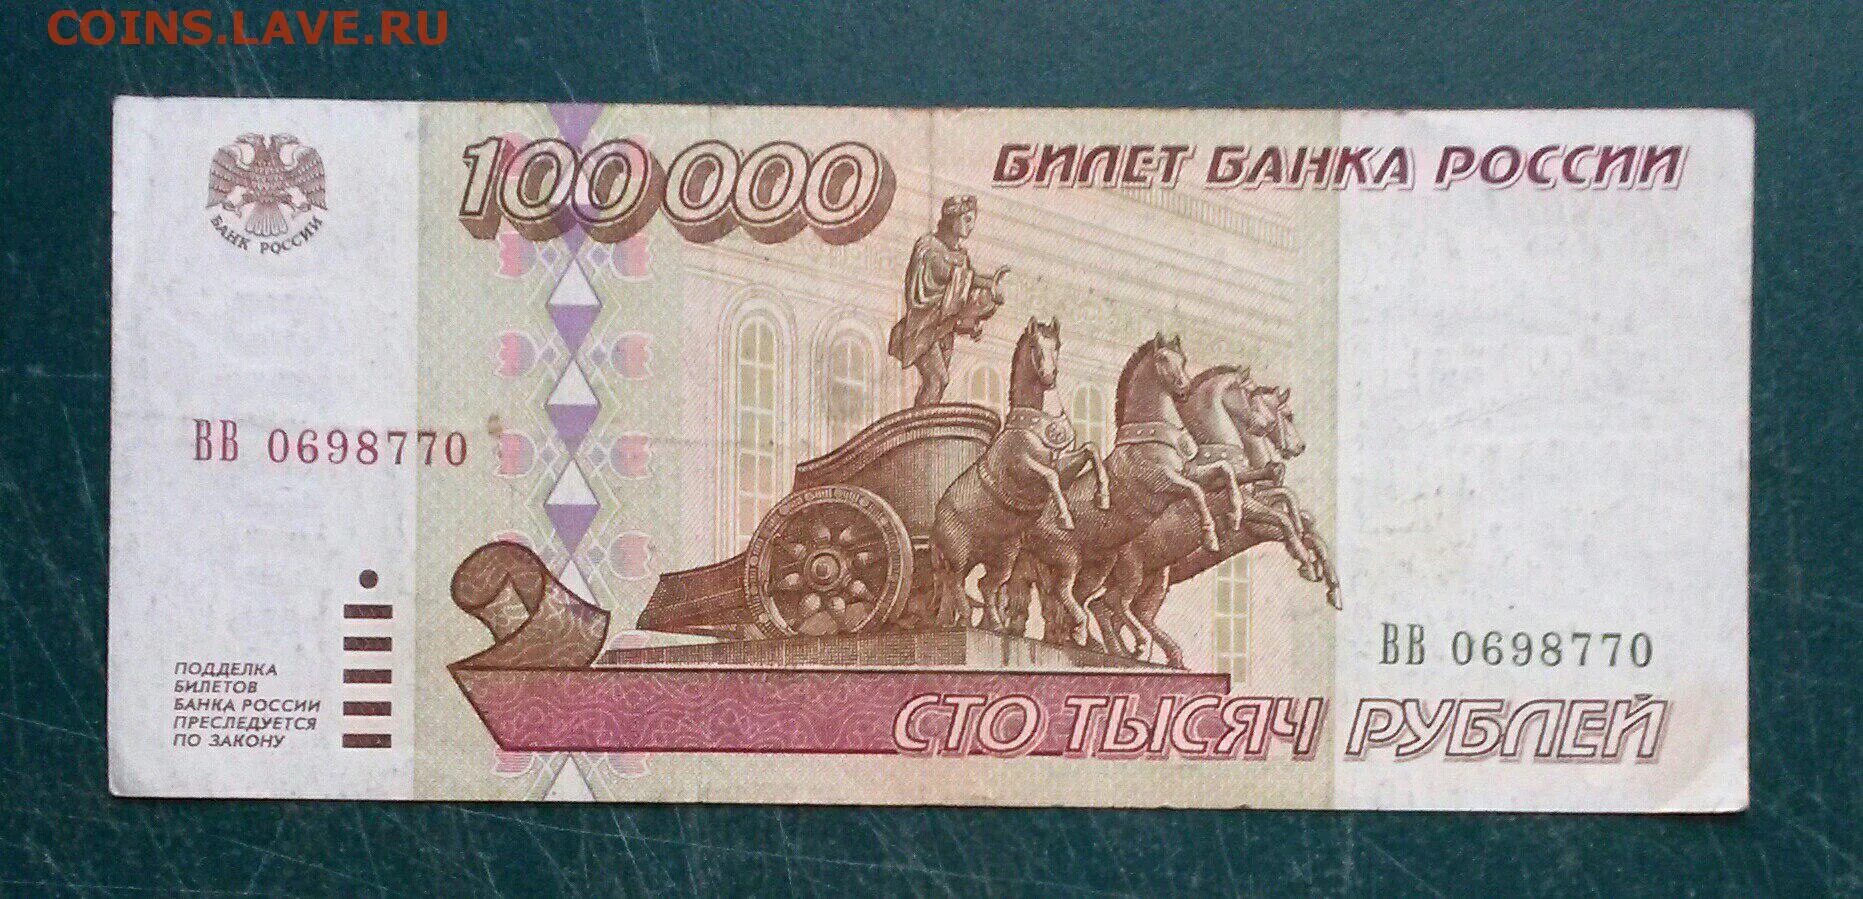 5000000 рублей в долларах. Распечатка 100000 рублей. 100000 Рублей напечатать. 300 Рублей 1995. 5000000 Рублей одной купюрой.